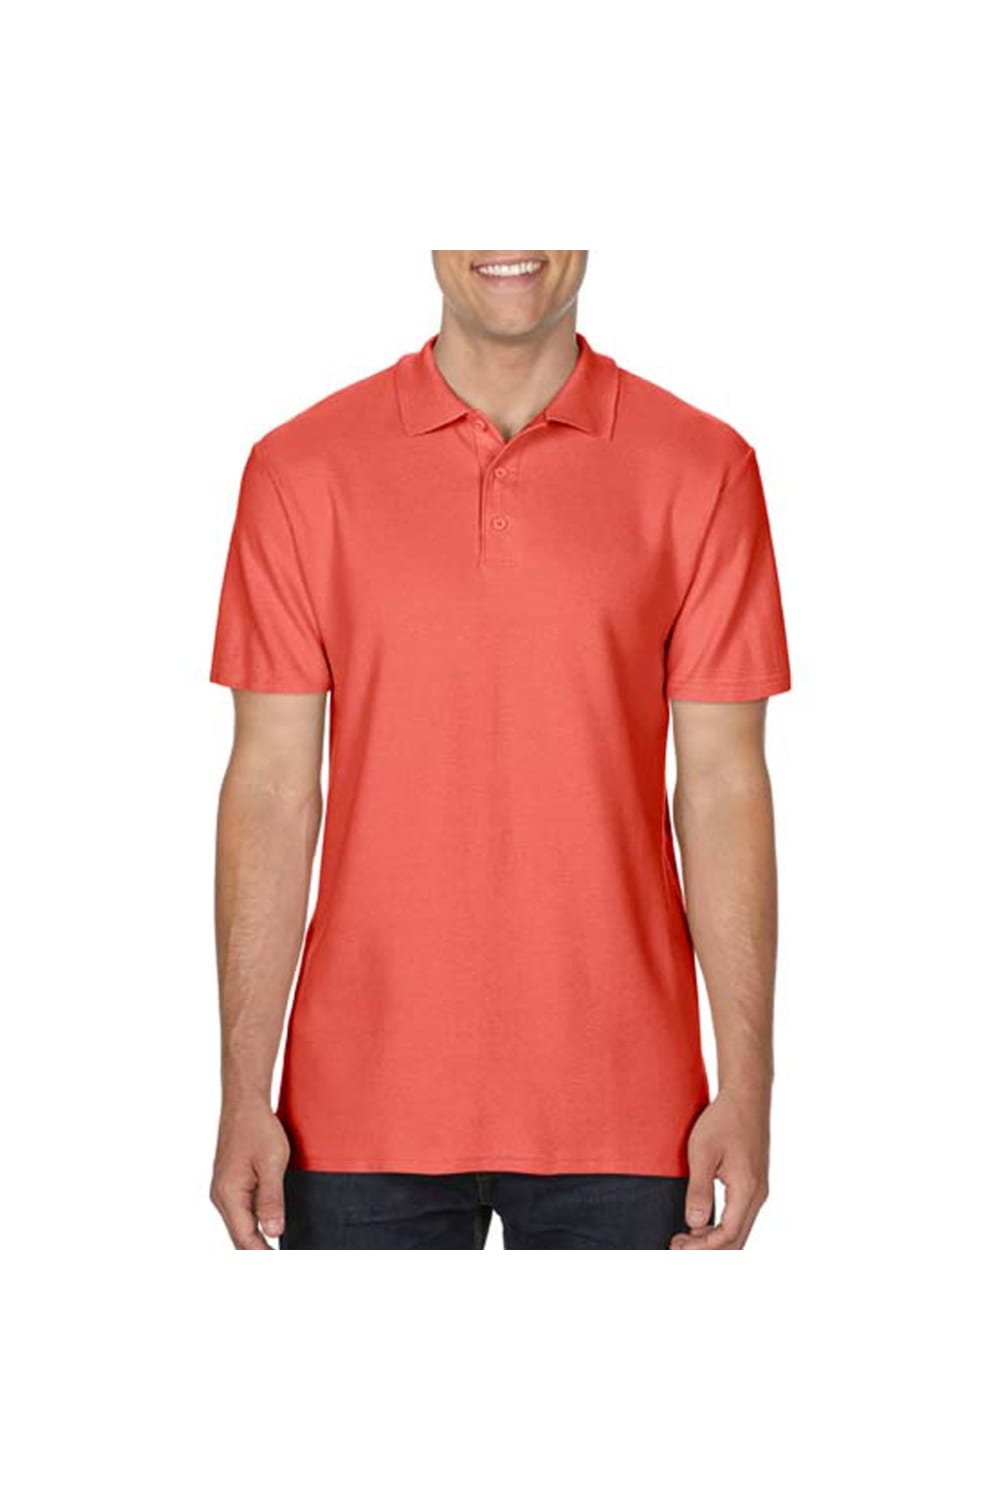 Gildan Mens SoftStyle Double Pique Polo Shirt (Bright Salmon)